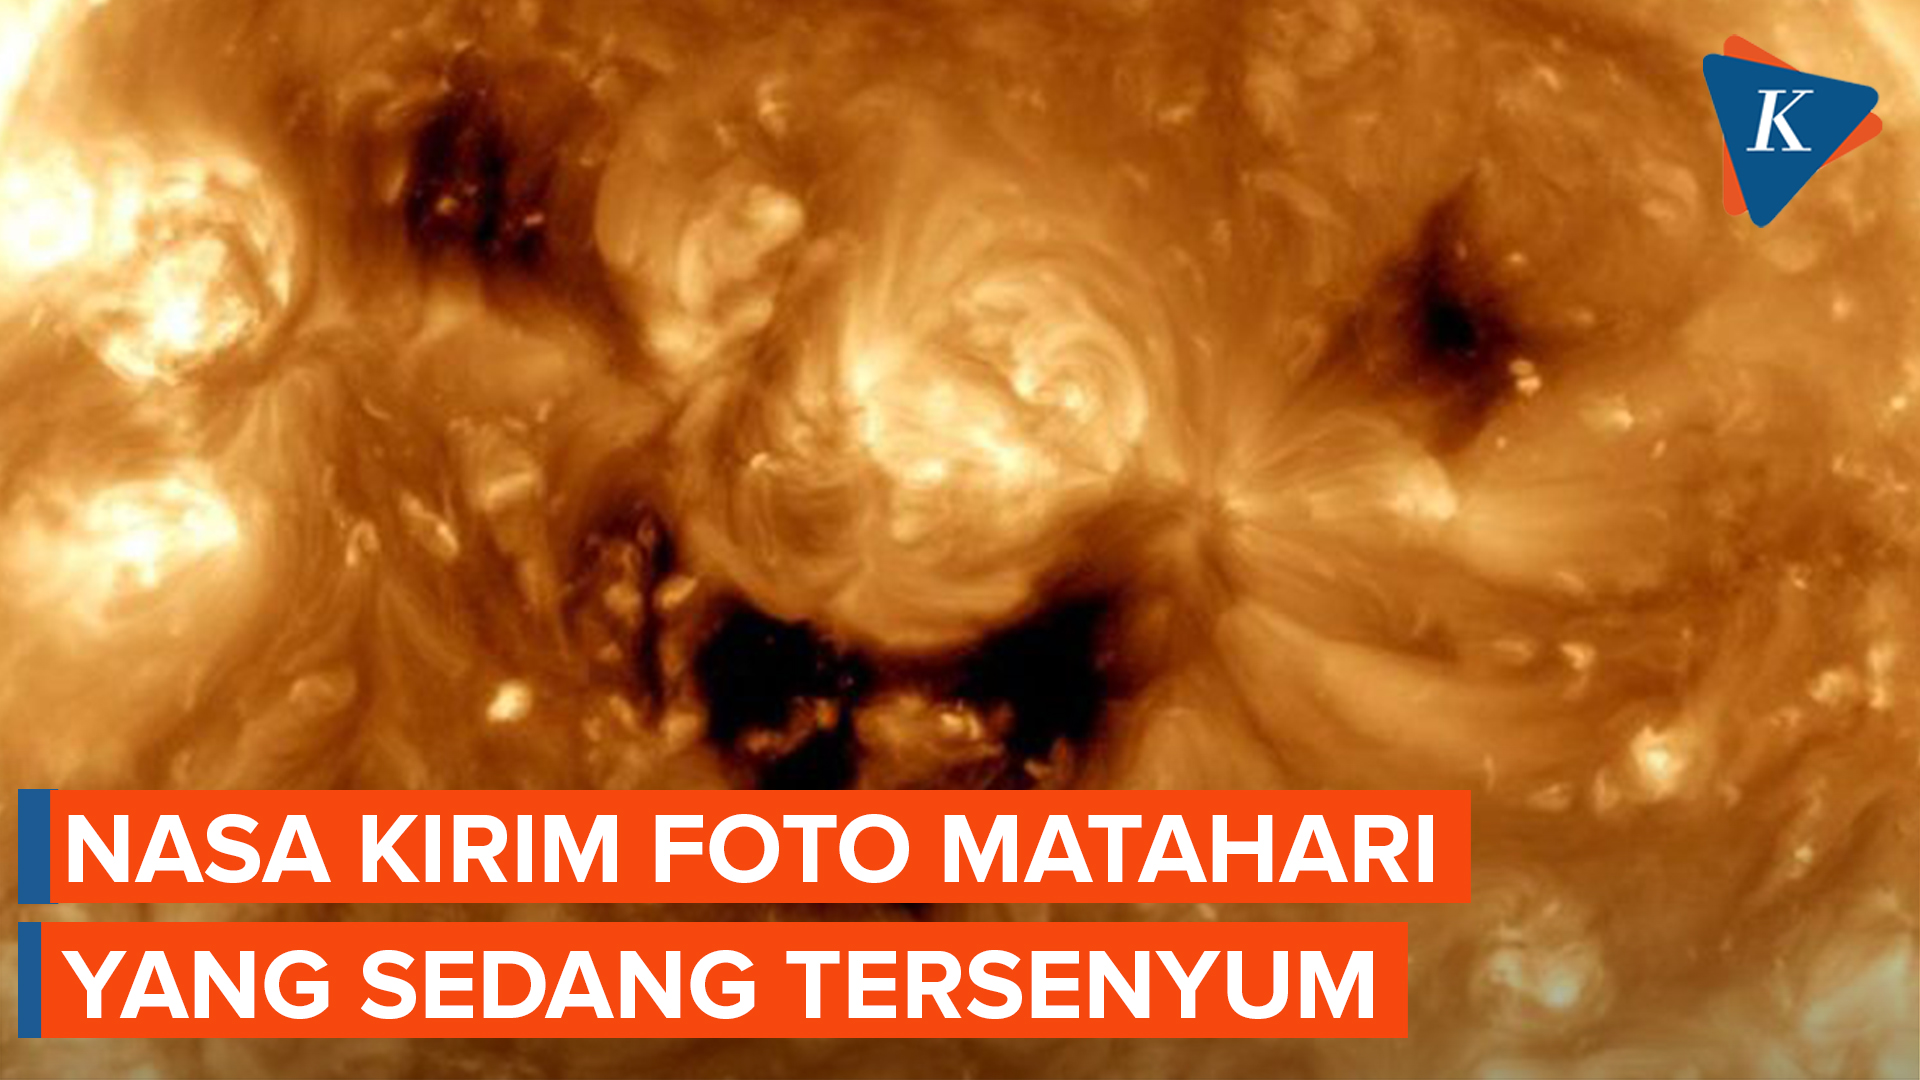 NASA Bagikan Foto Matahari Sedang Tersenyum, Seperti di Teletubbies